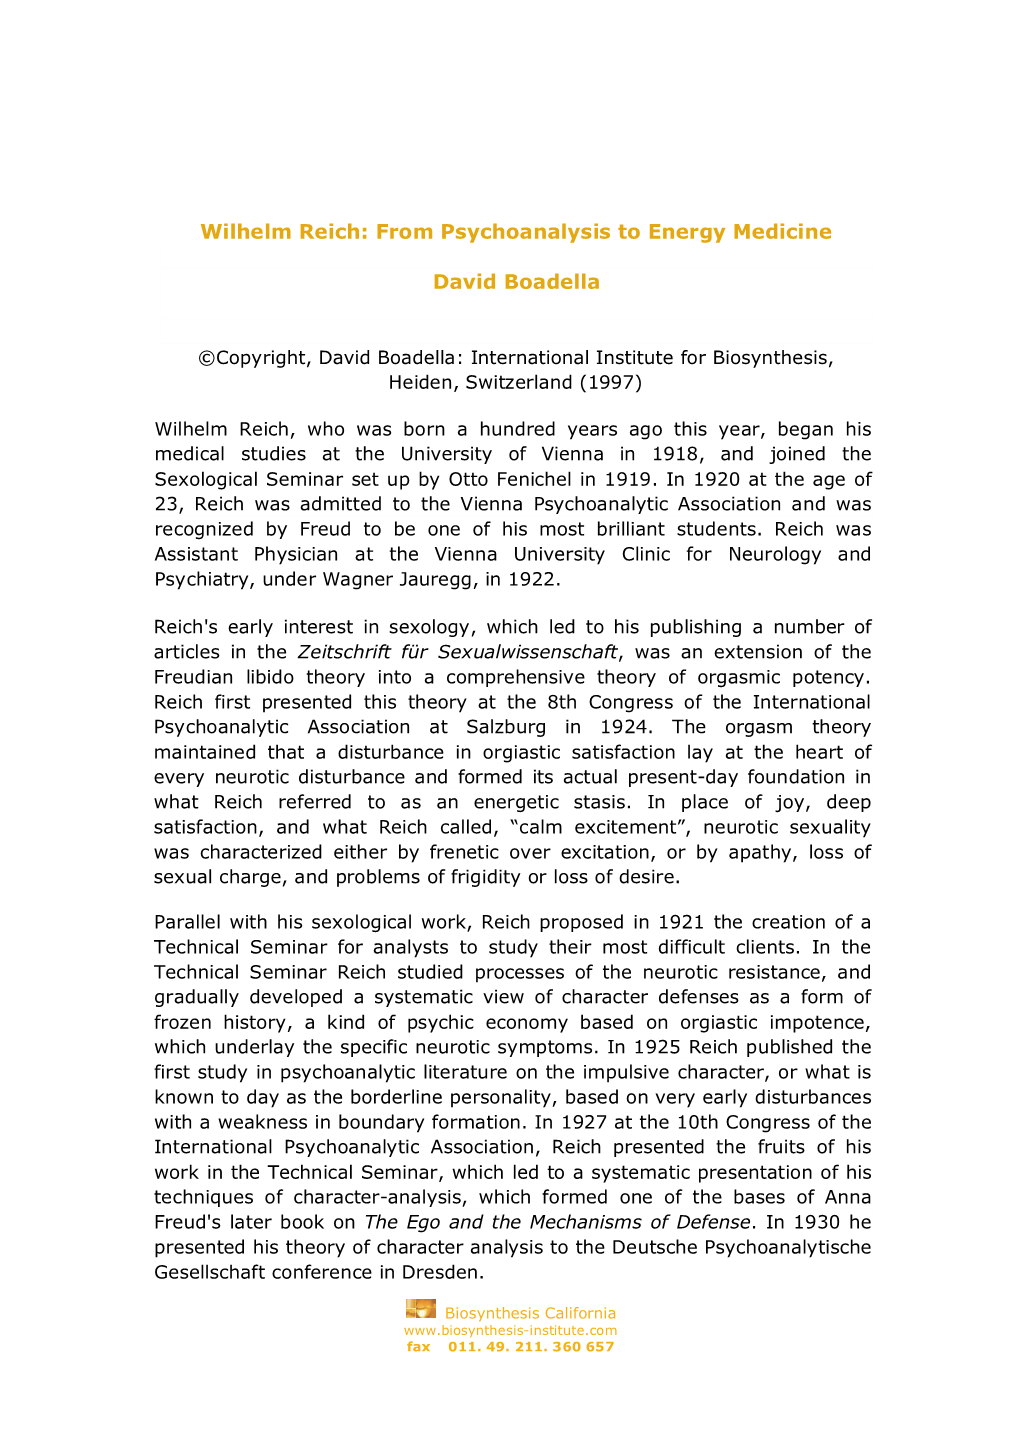 Wilhelm Reich: from Psychoanalysis to Energy Medicine